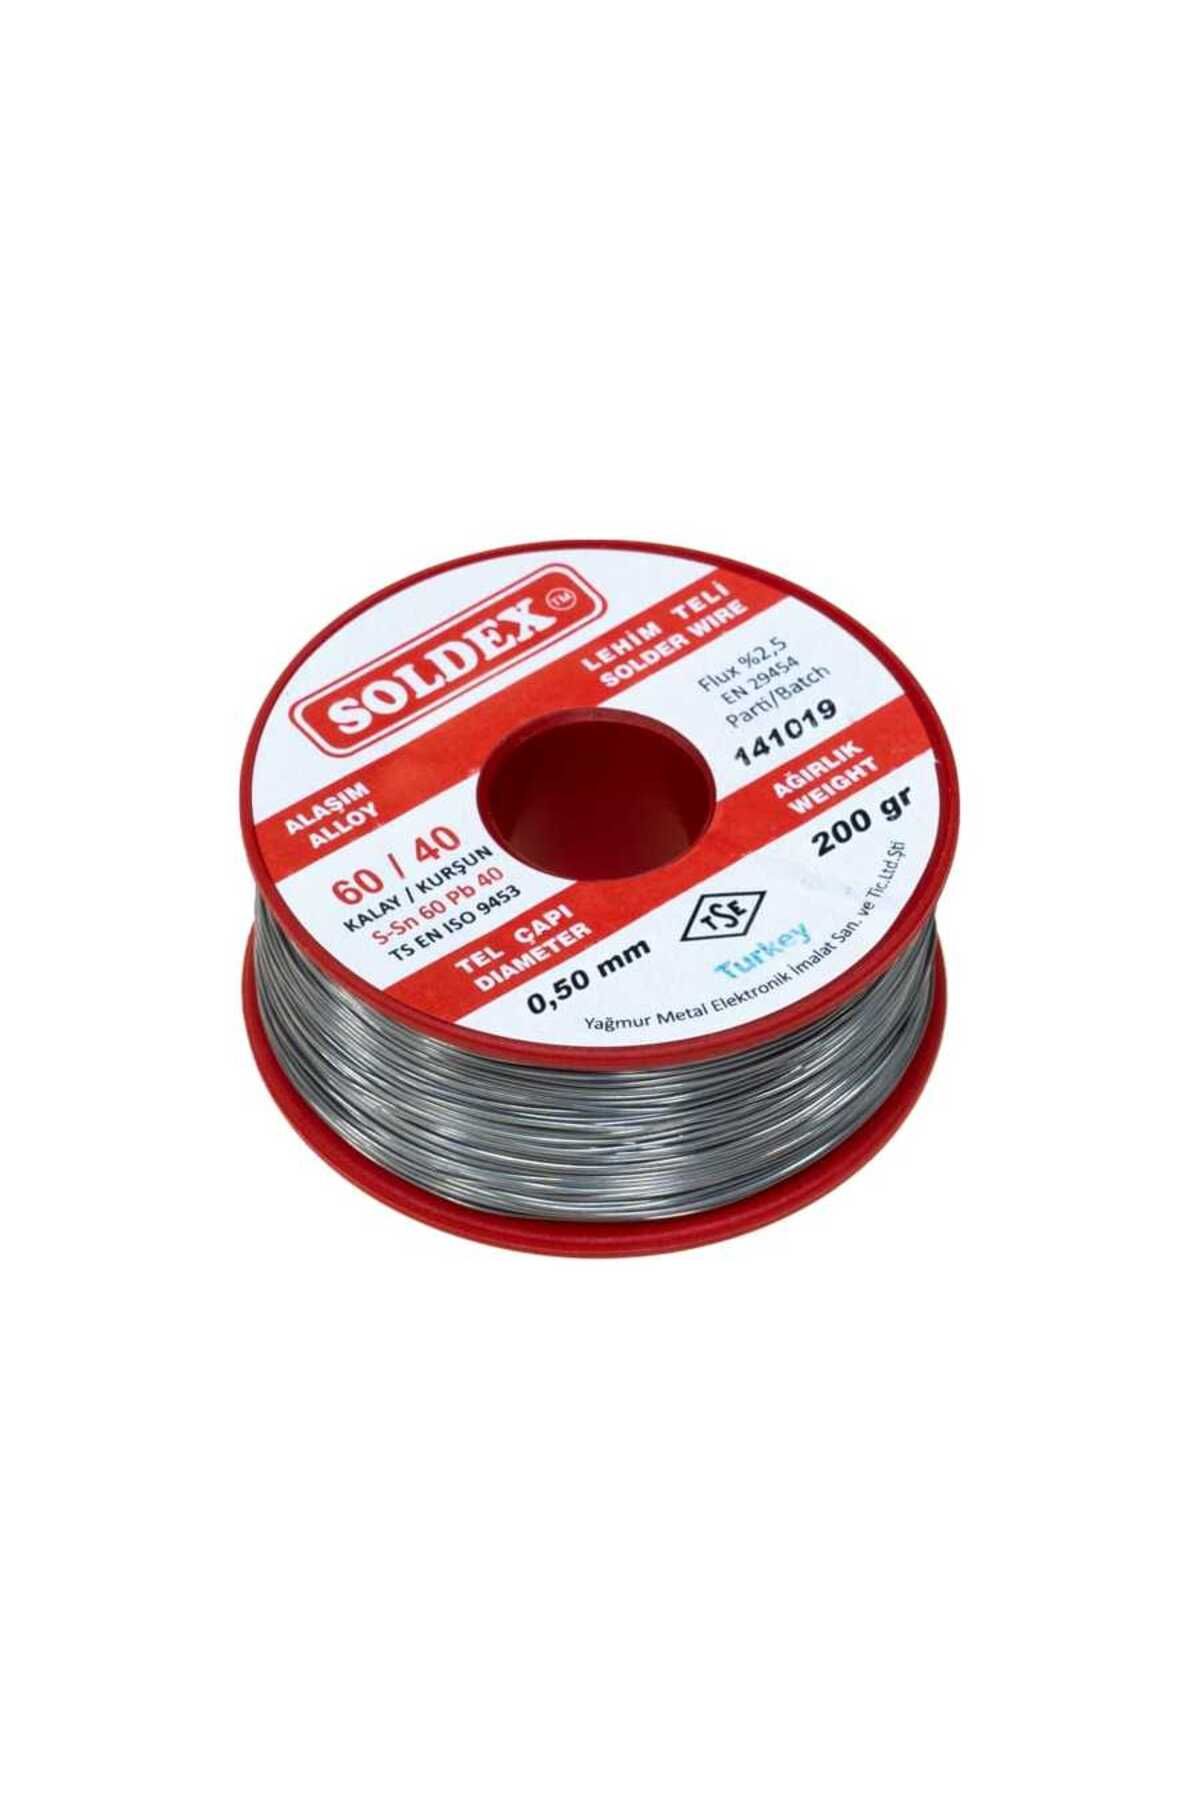 Soldex 0.5 mm 200 g Lehim Teli (%60 Sn / %40 Pb)